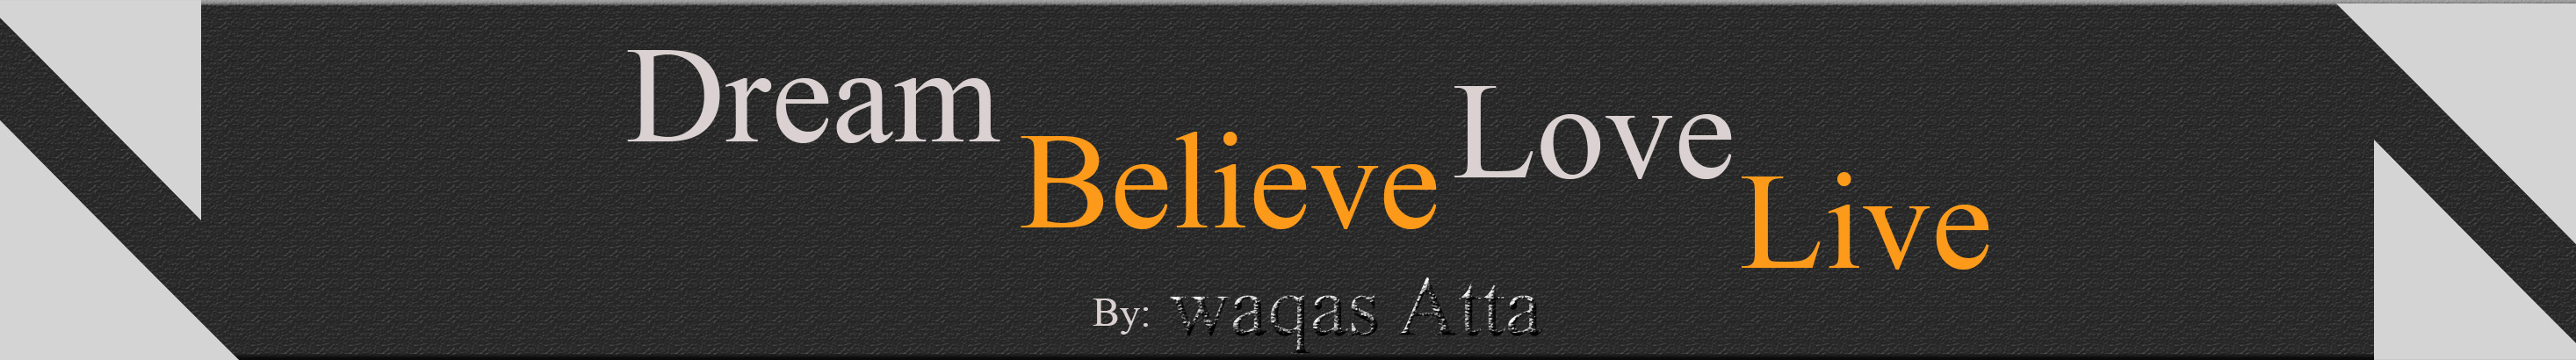 waqas atta's profile banner